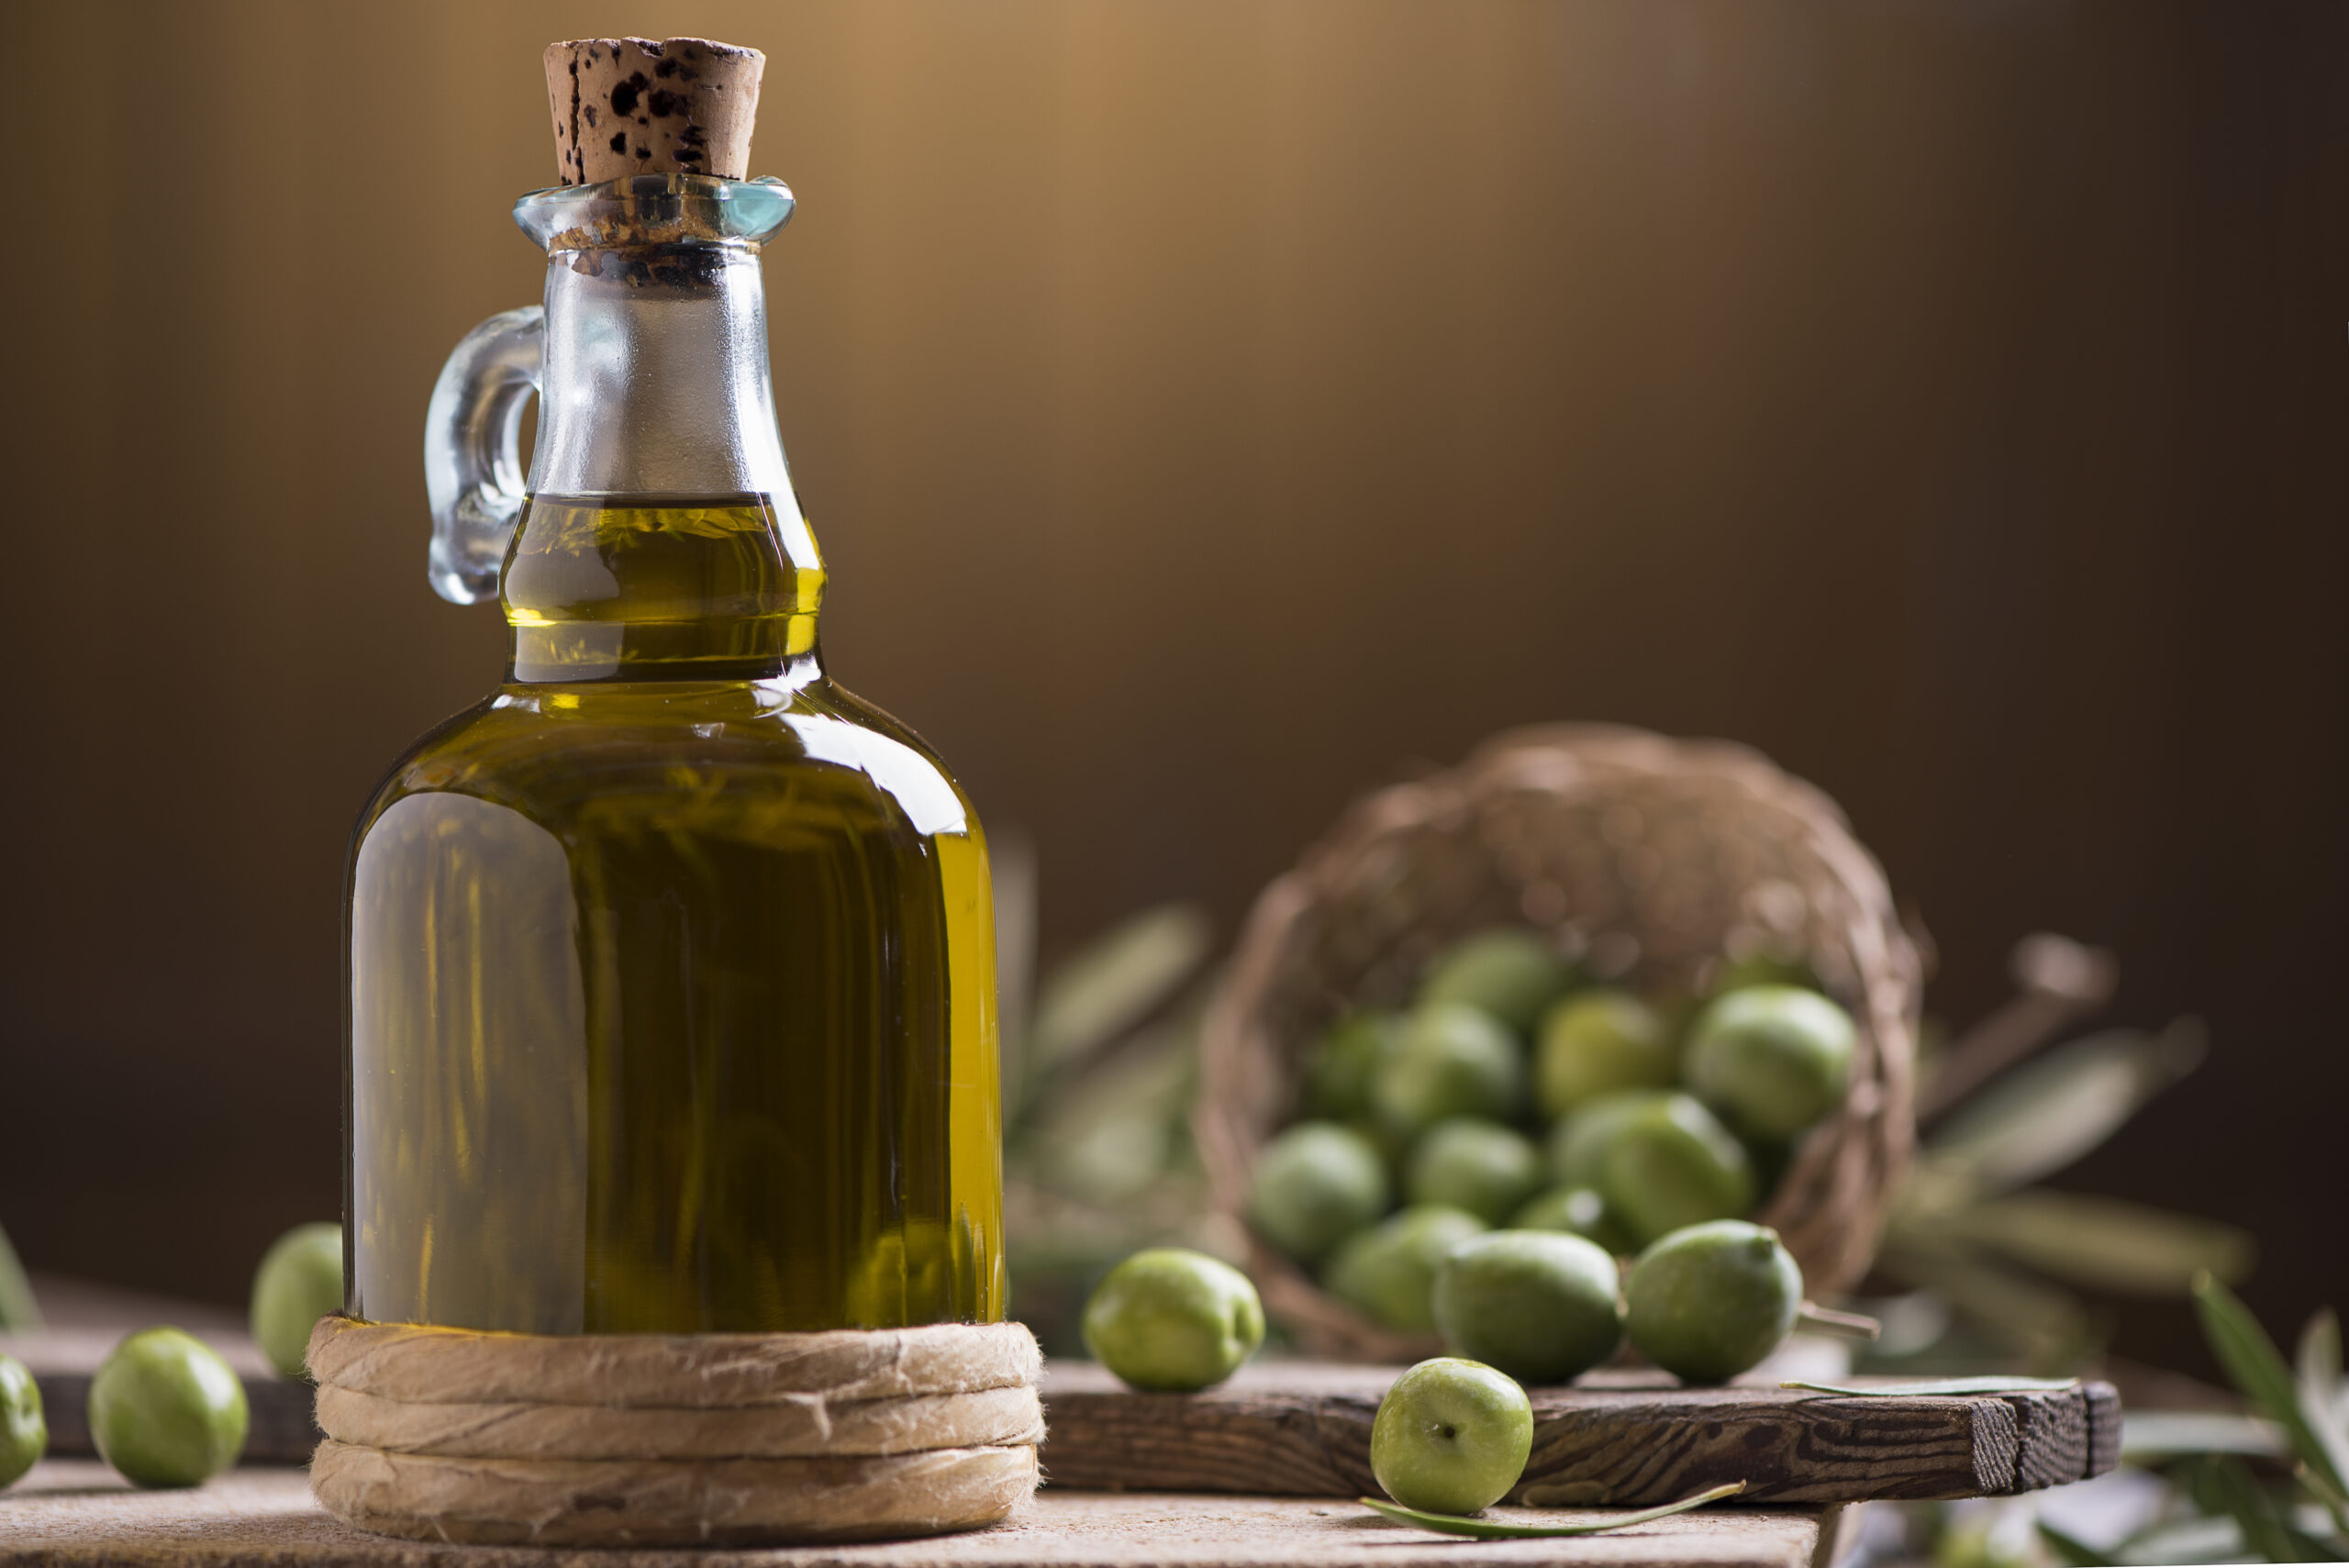 In Spagna torna a crescere la produzione di olio d'oliva: in prospettiva i prezzi sono destinati a scendere